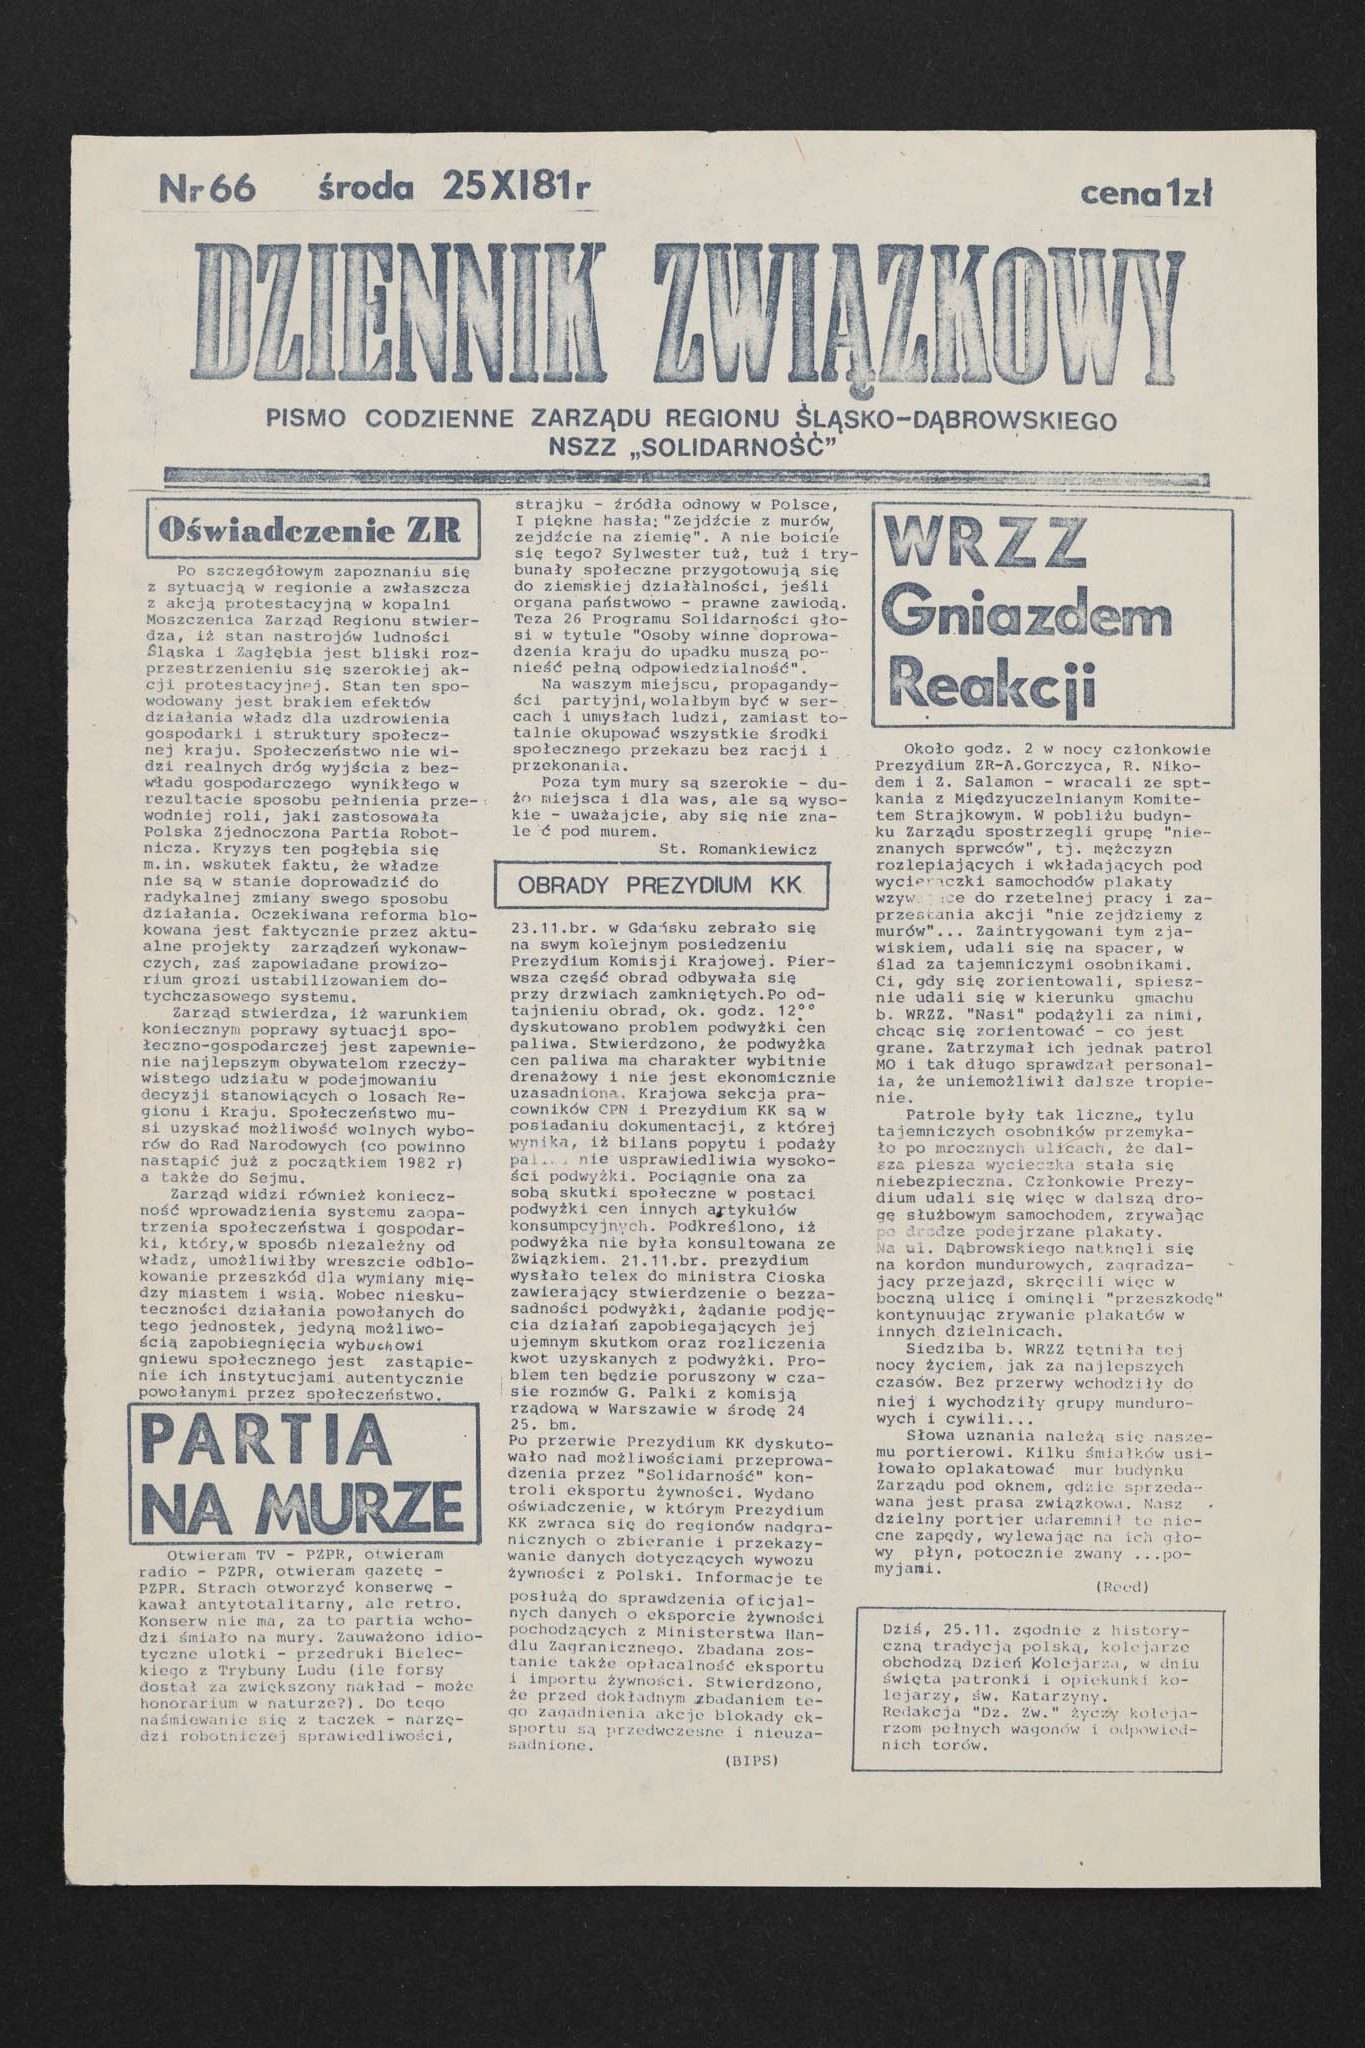 Dziennik związkowy nr 66 25.11.1981